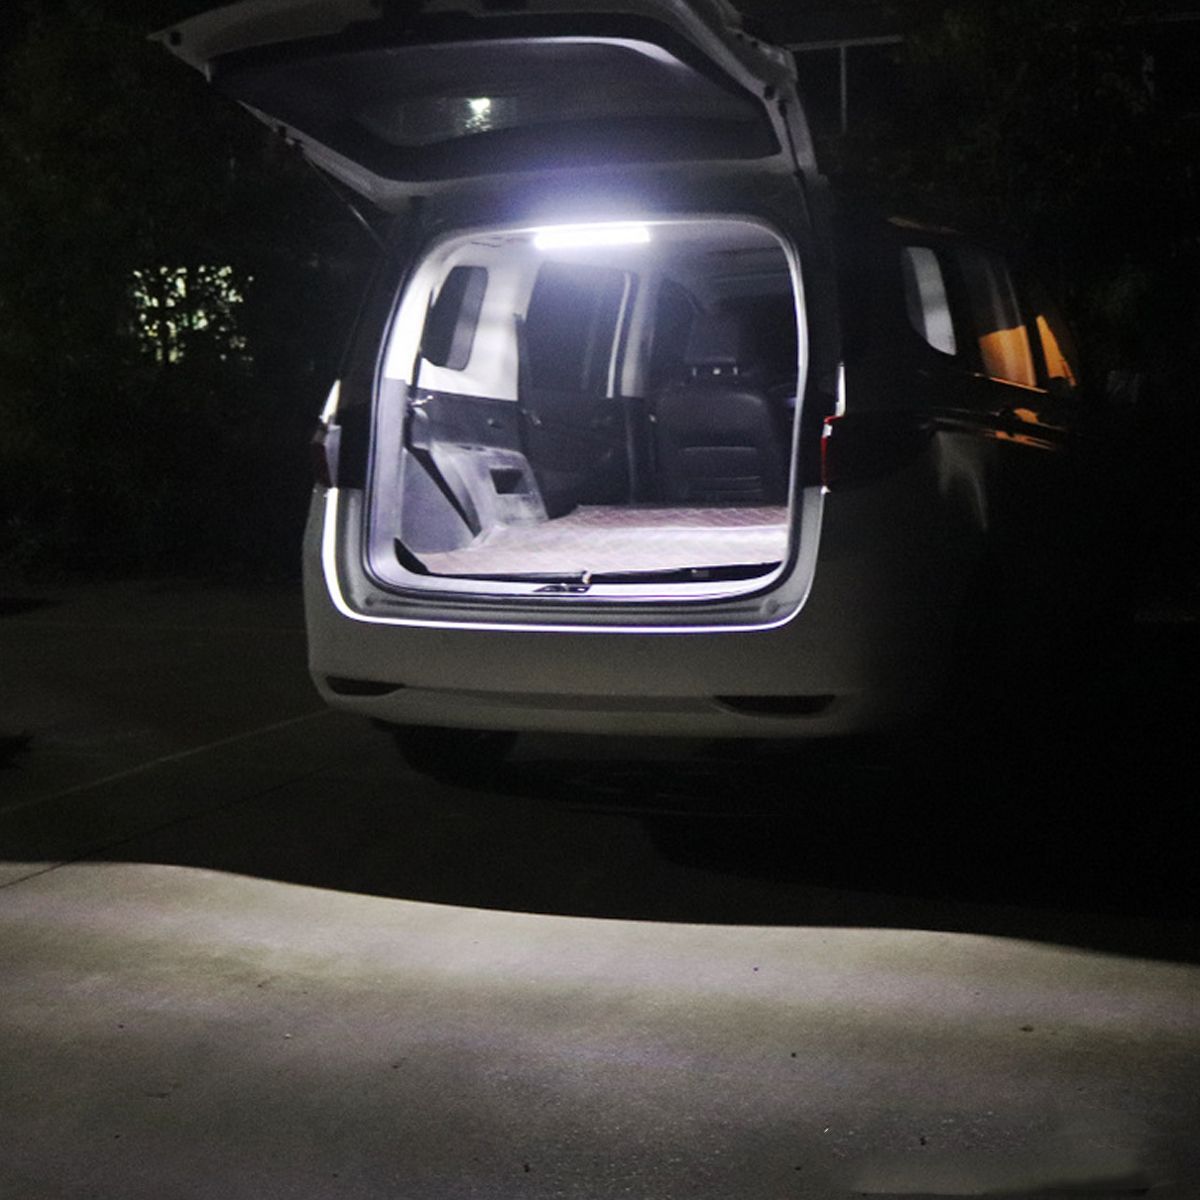 108-LED-Car-Interior-Strip-Lights-Independent-Switch-Caravan-Truck-Camper-Lamp-12V-80V-1736487